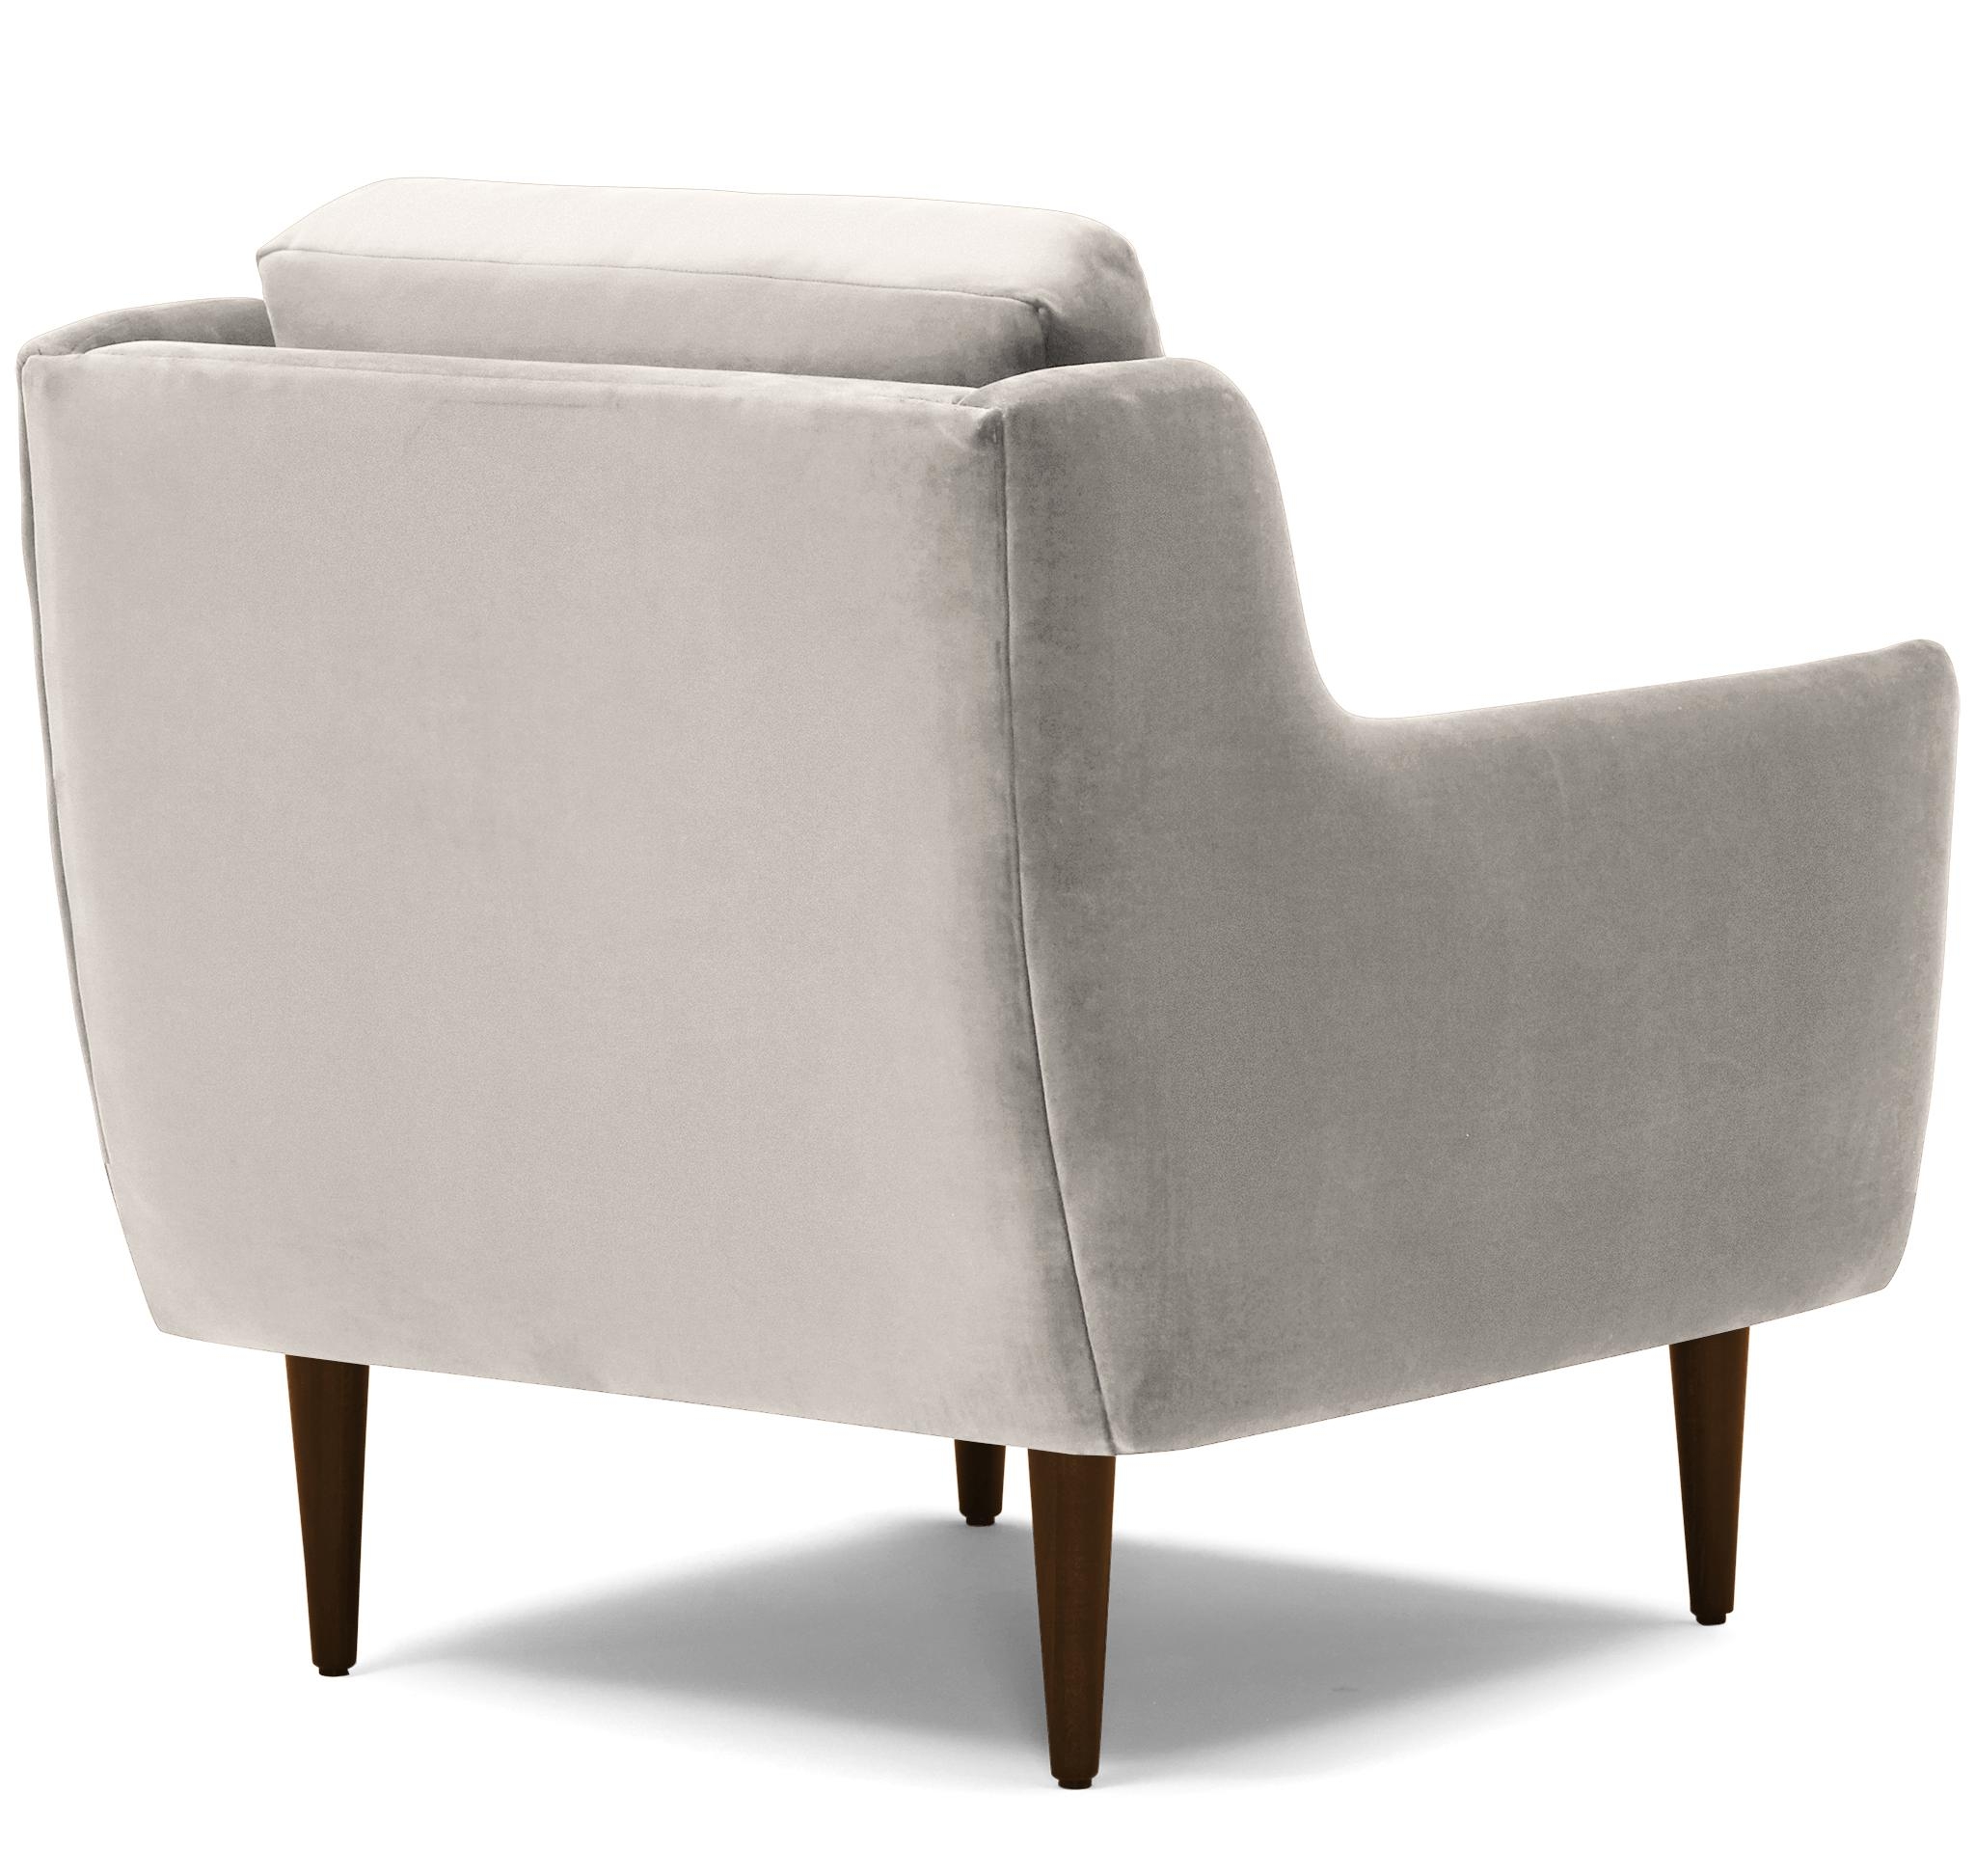 Beige/White Bell Mid Century Modern Chair - Merit Dove - Mocha - Image 3